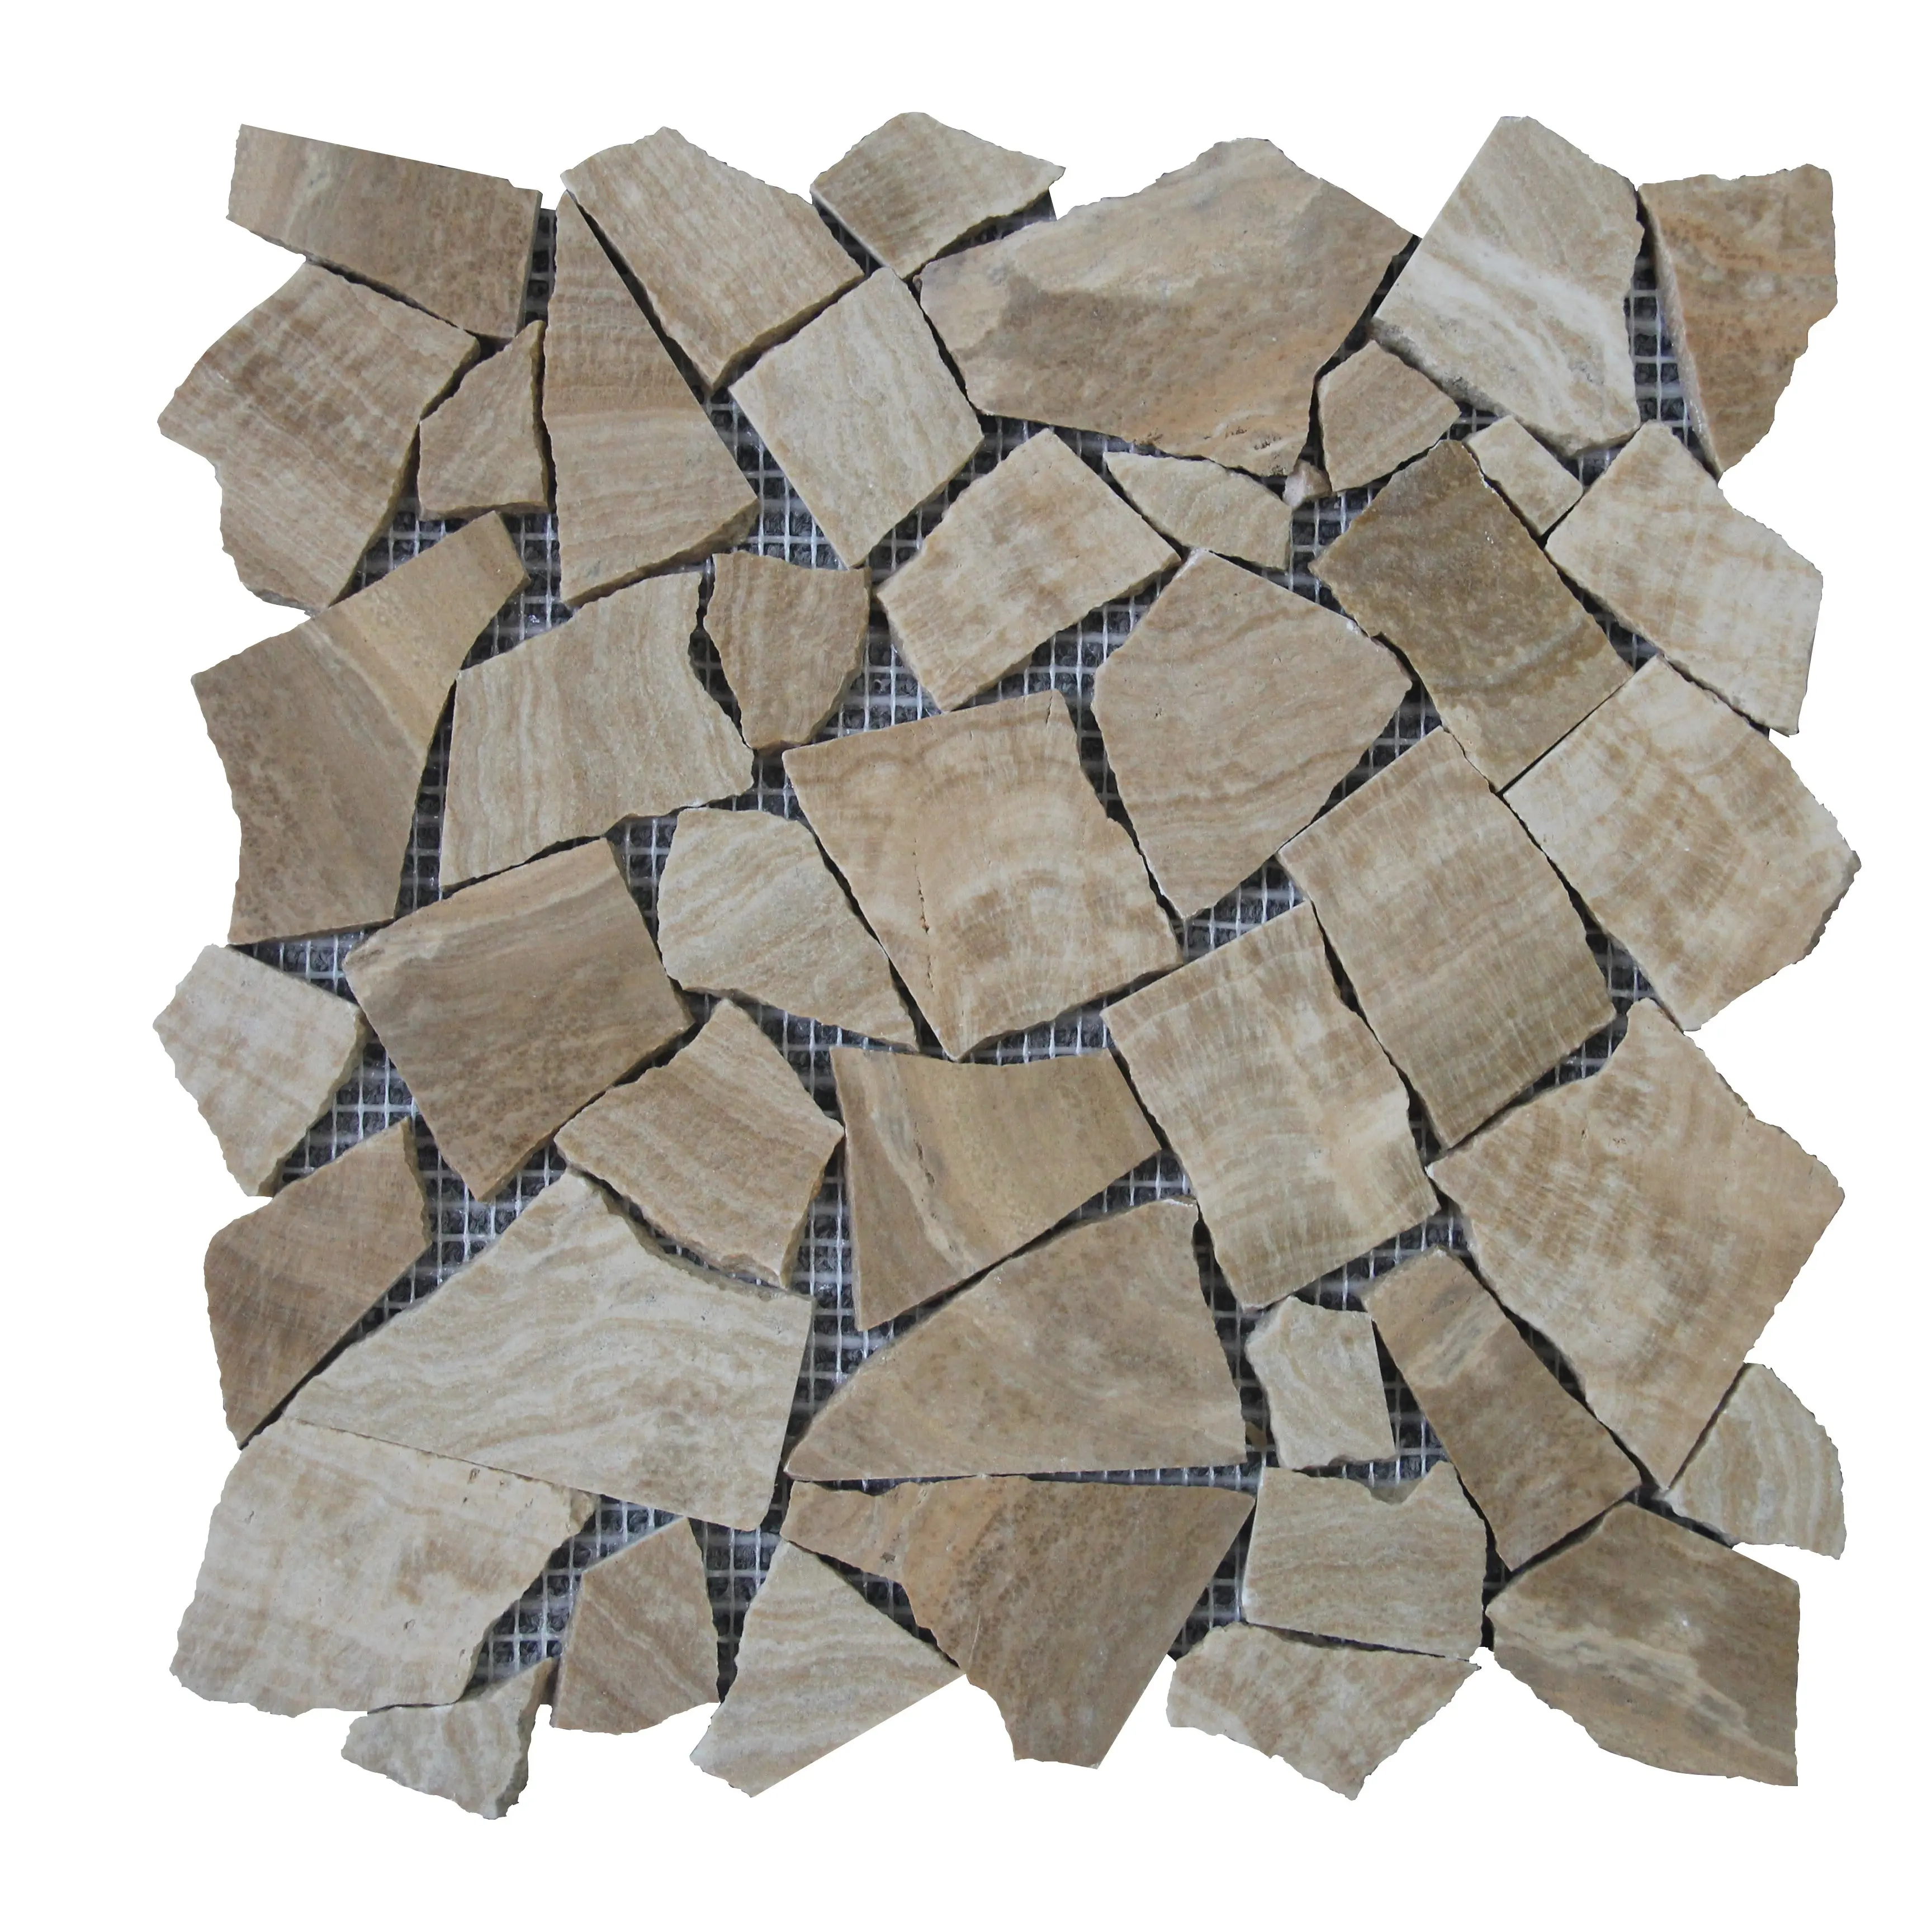 Pedra Artificial Preço Barato Amarelo Madeira Mosaico Banheiro Parede Cozinha Backsplash Tile